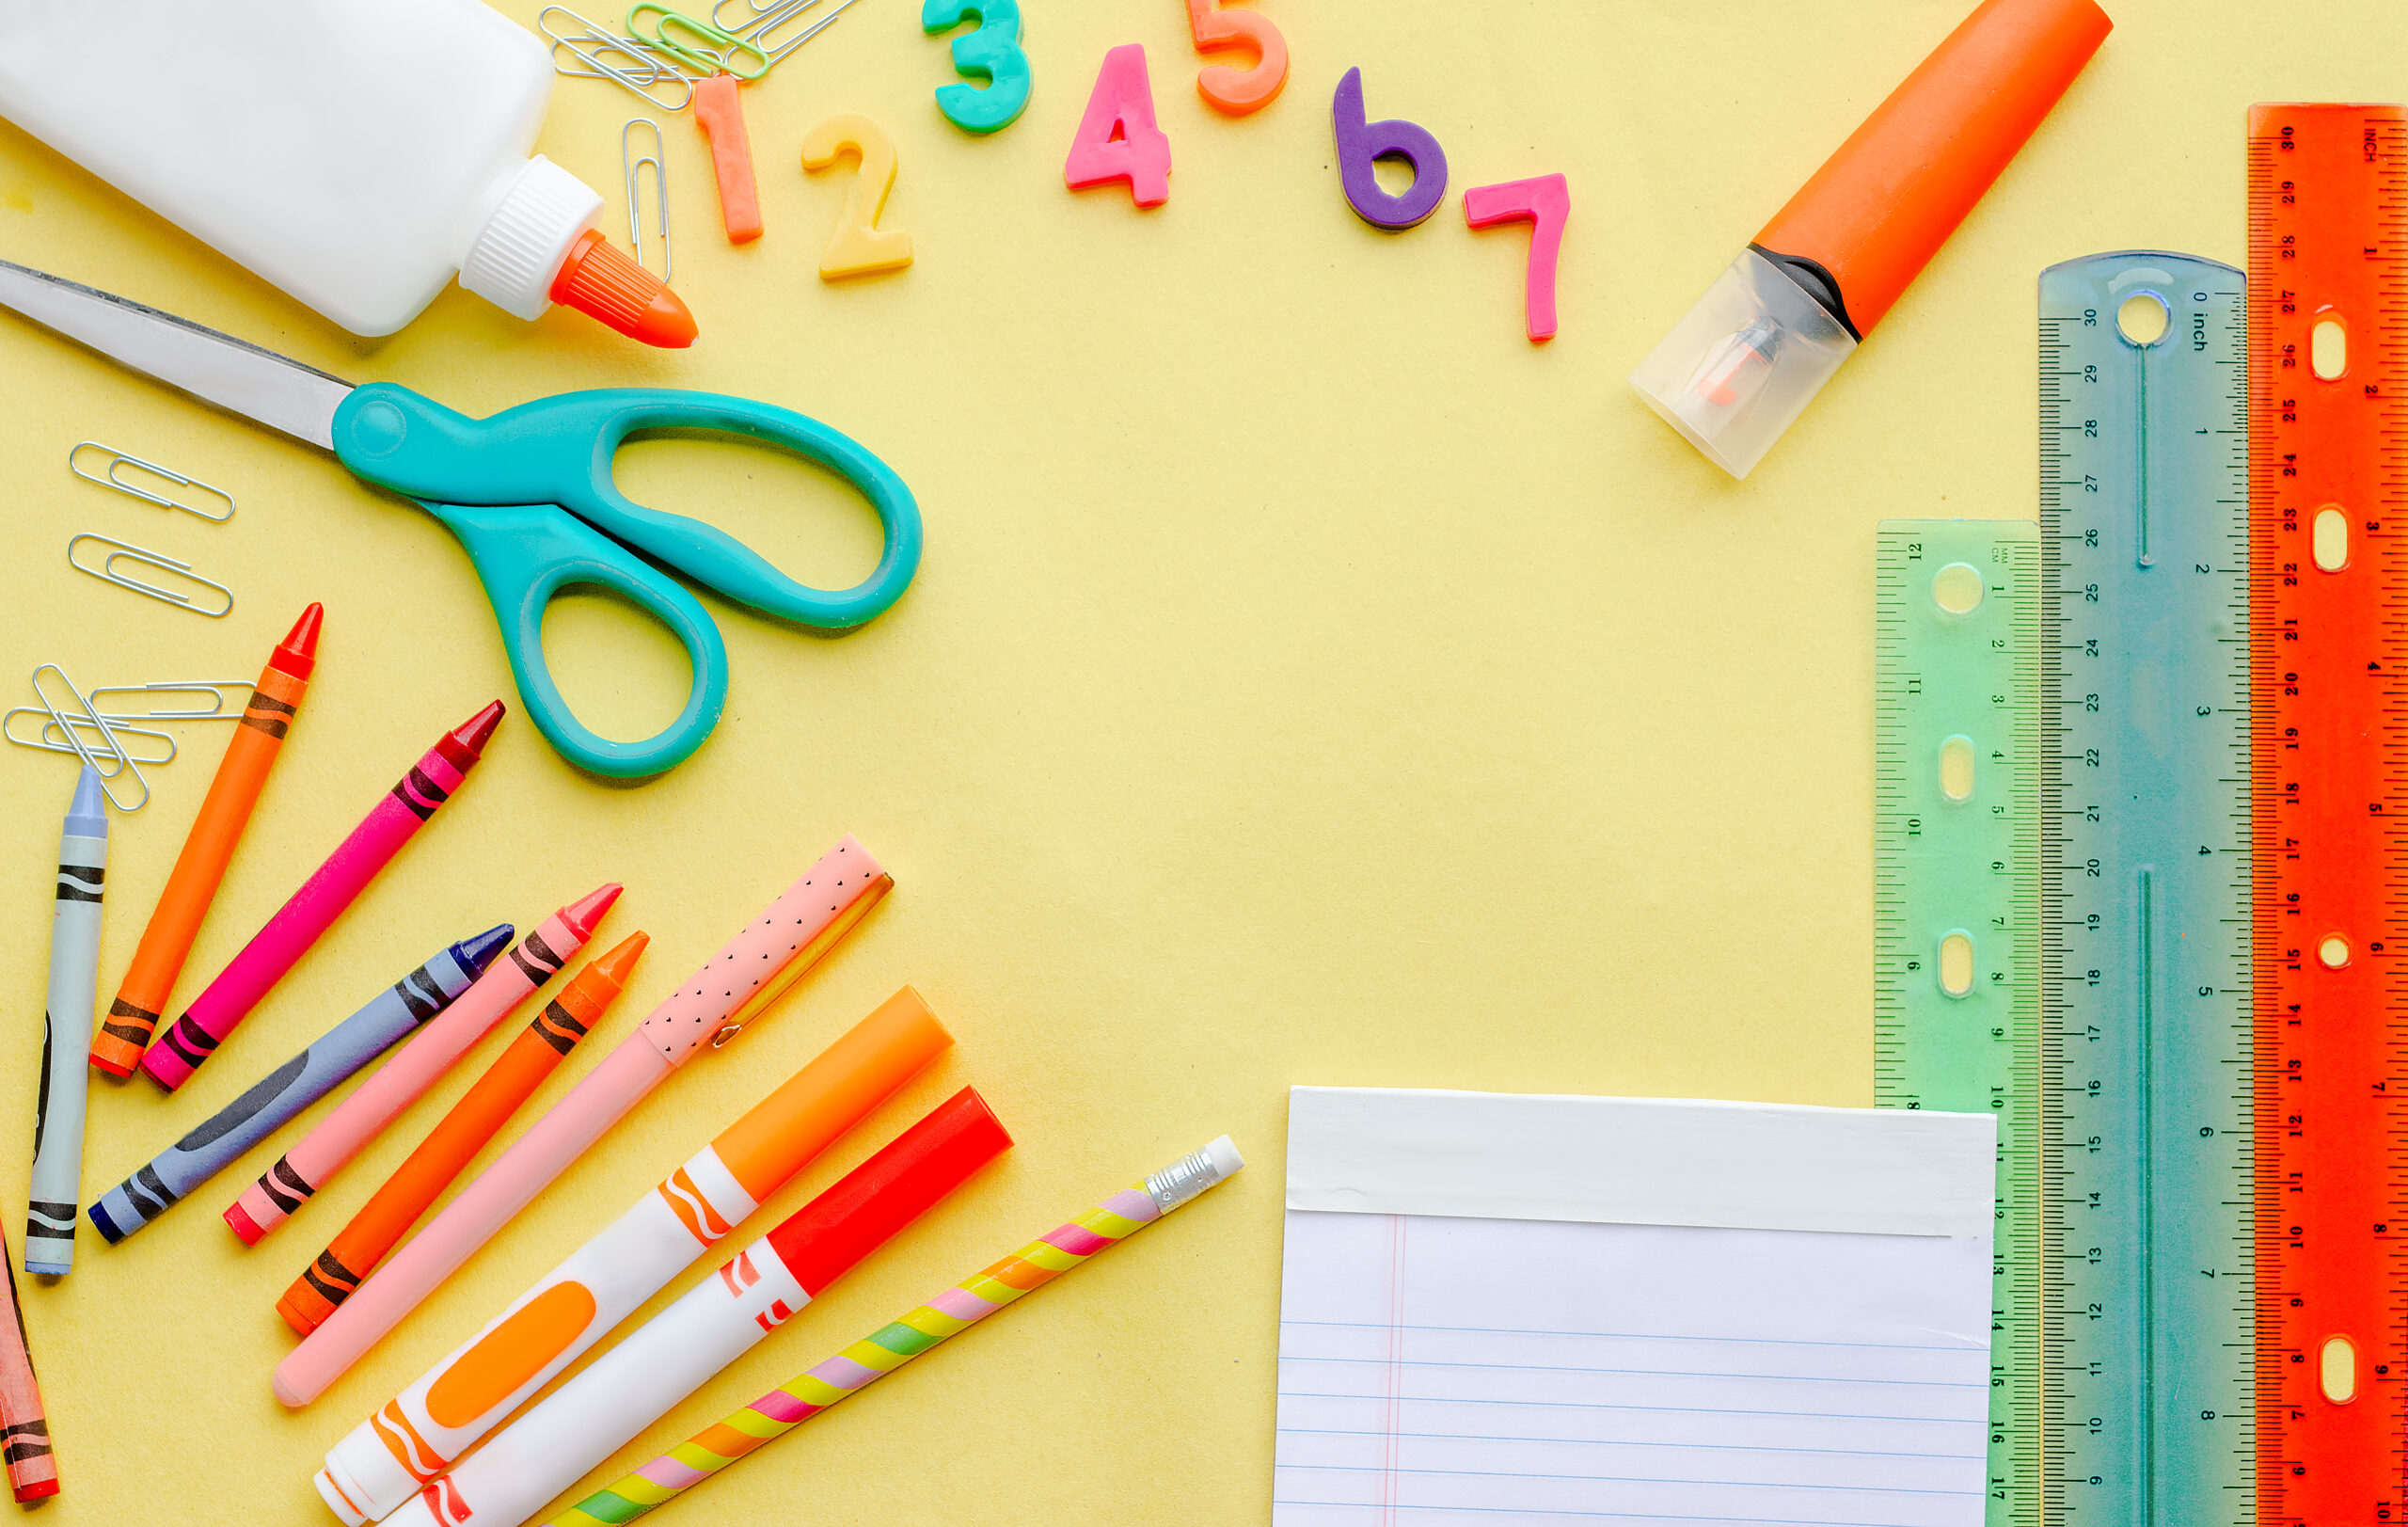 Preschool and Kindergarten School Supplies List